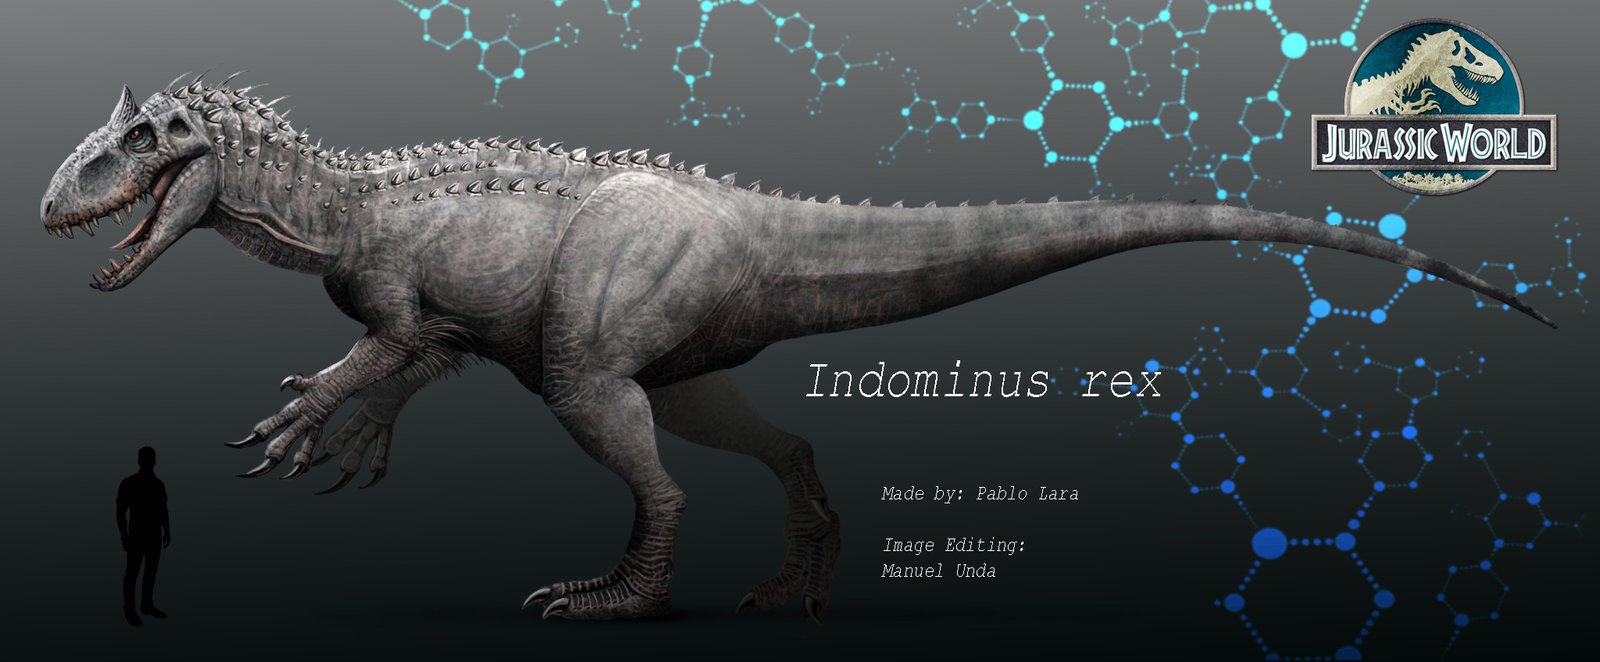 Jurassic World Indominus rex by MANUSAURIO